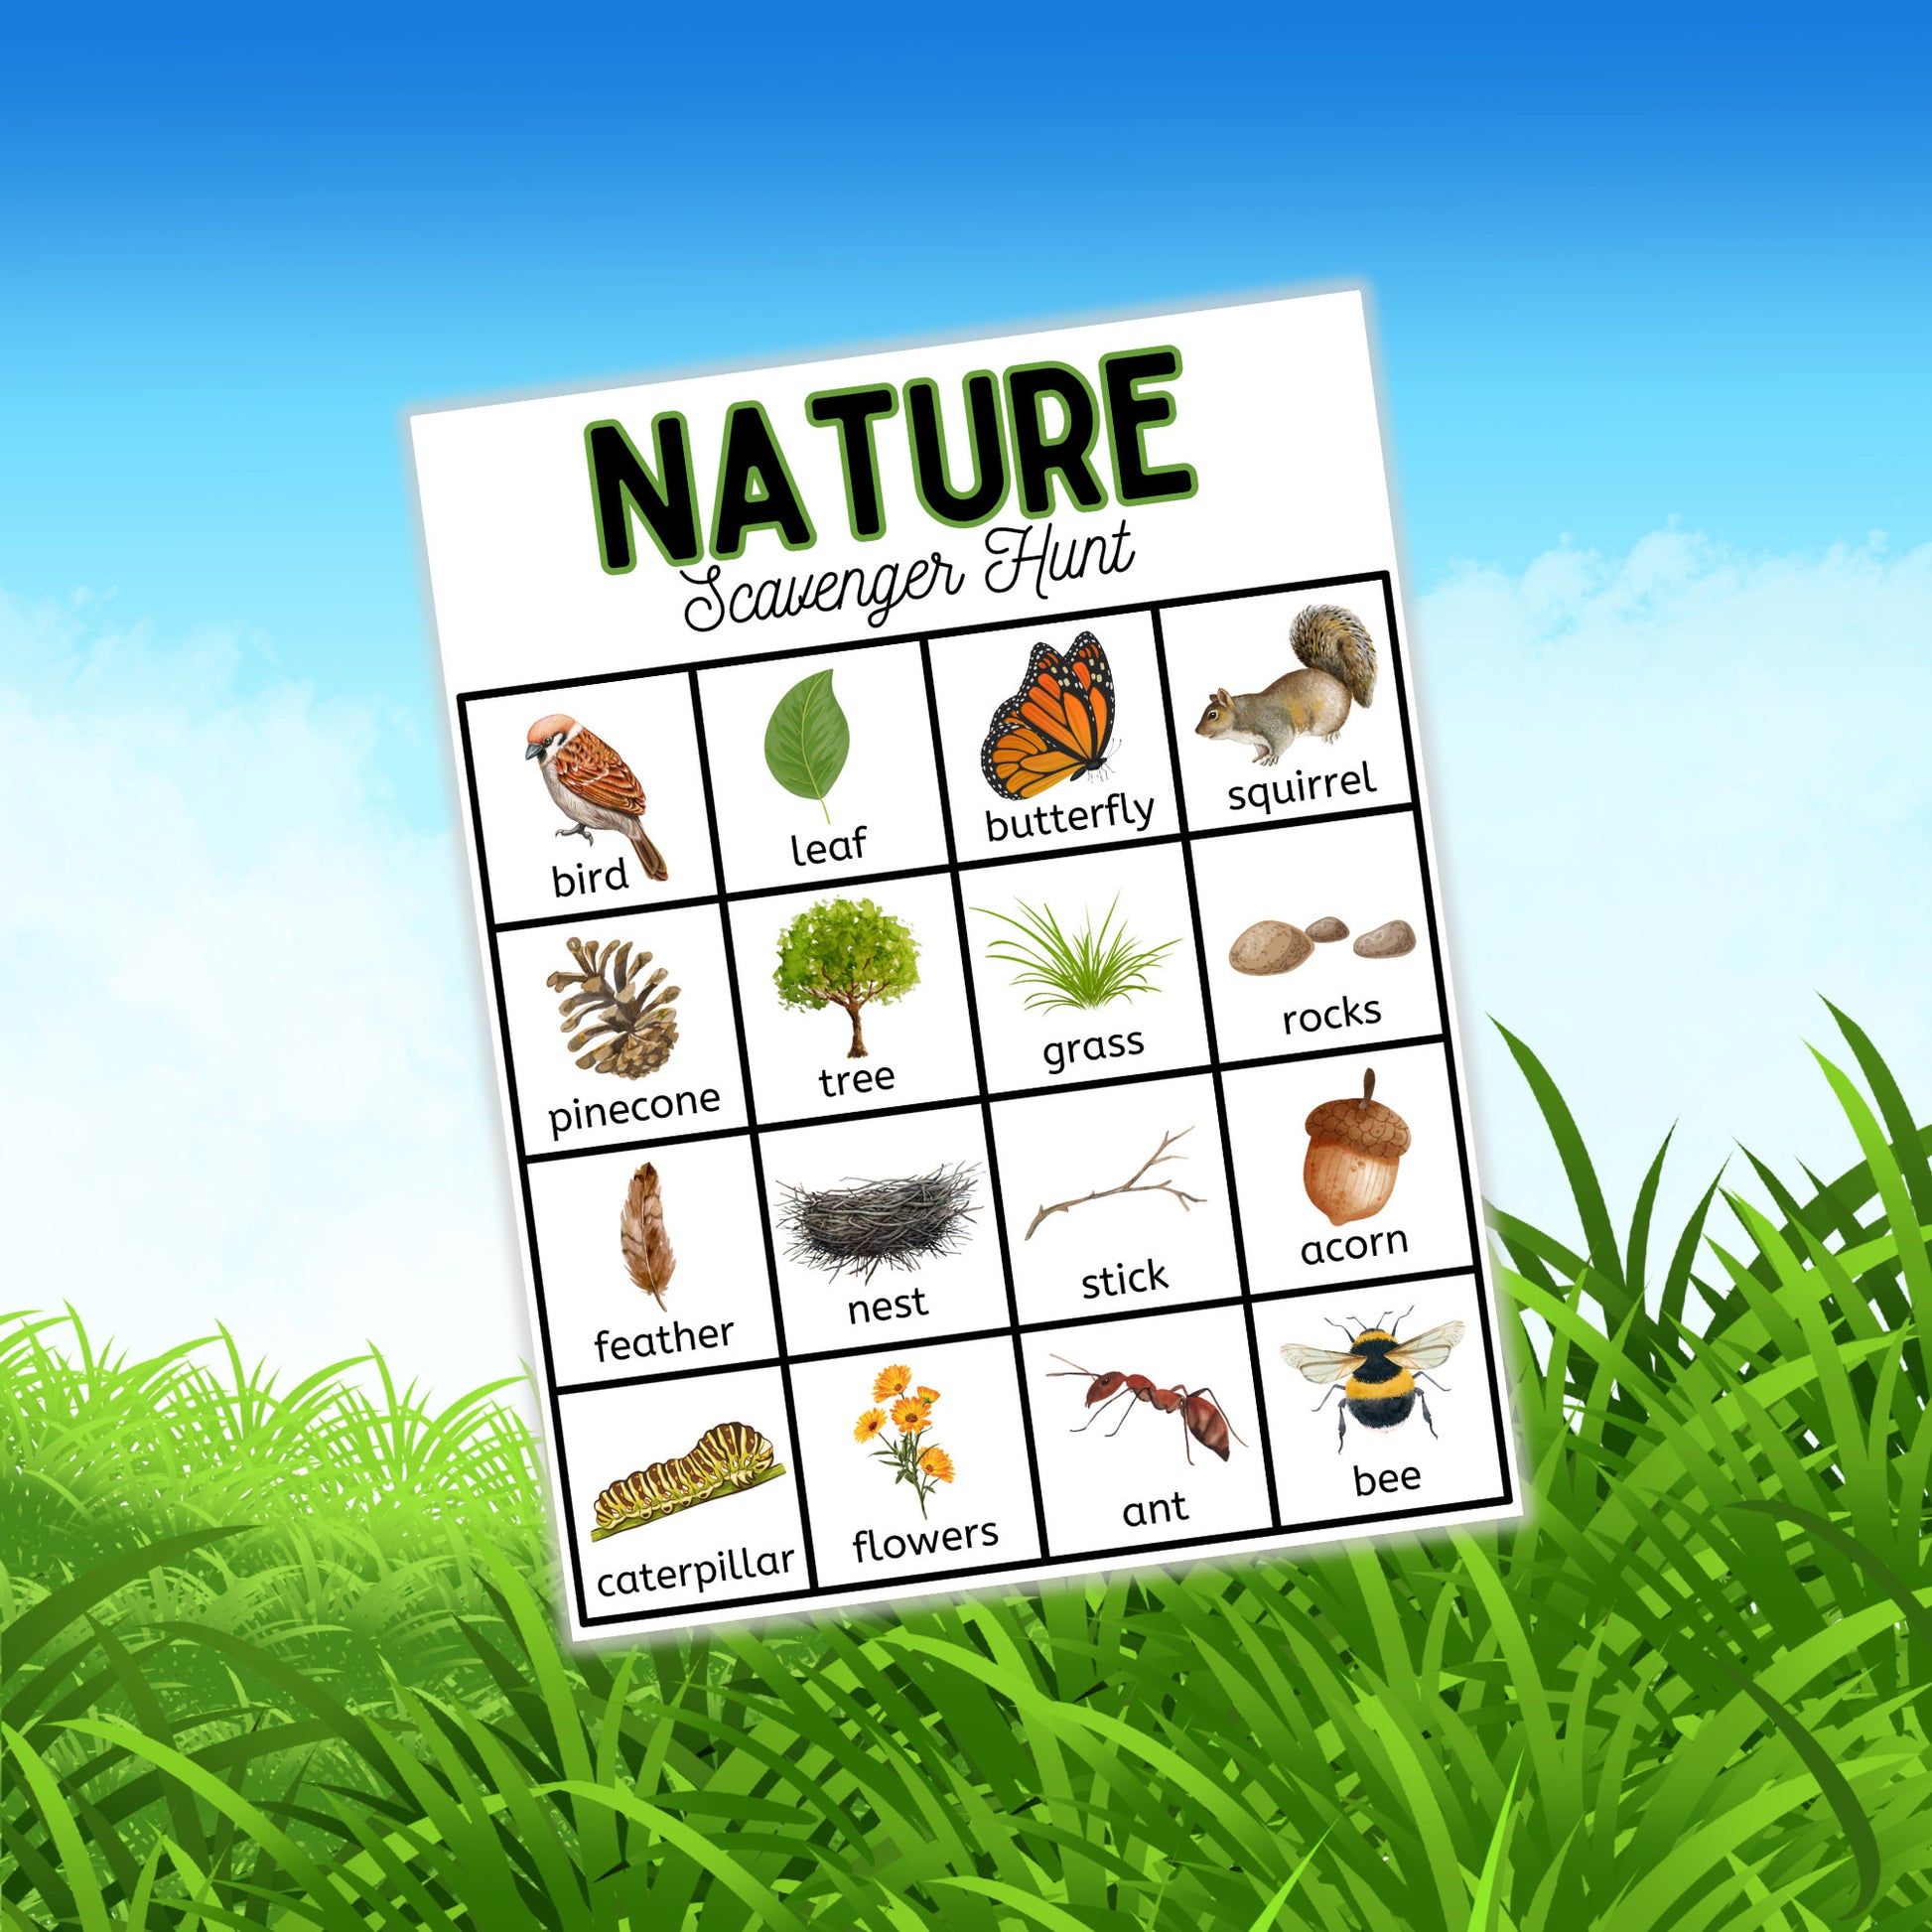 Nature Scavenger Hunt Printable, Kids Outdoor Activity, Educational Exploration Game, Instant Download, Seek and Find, Scavenger Hunts